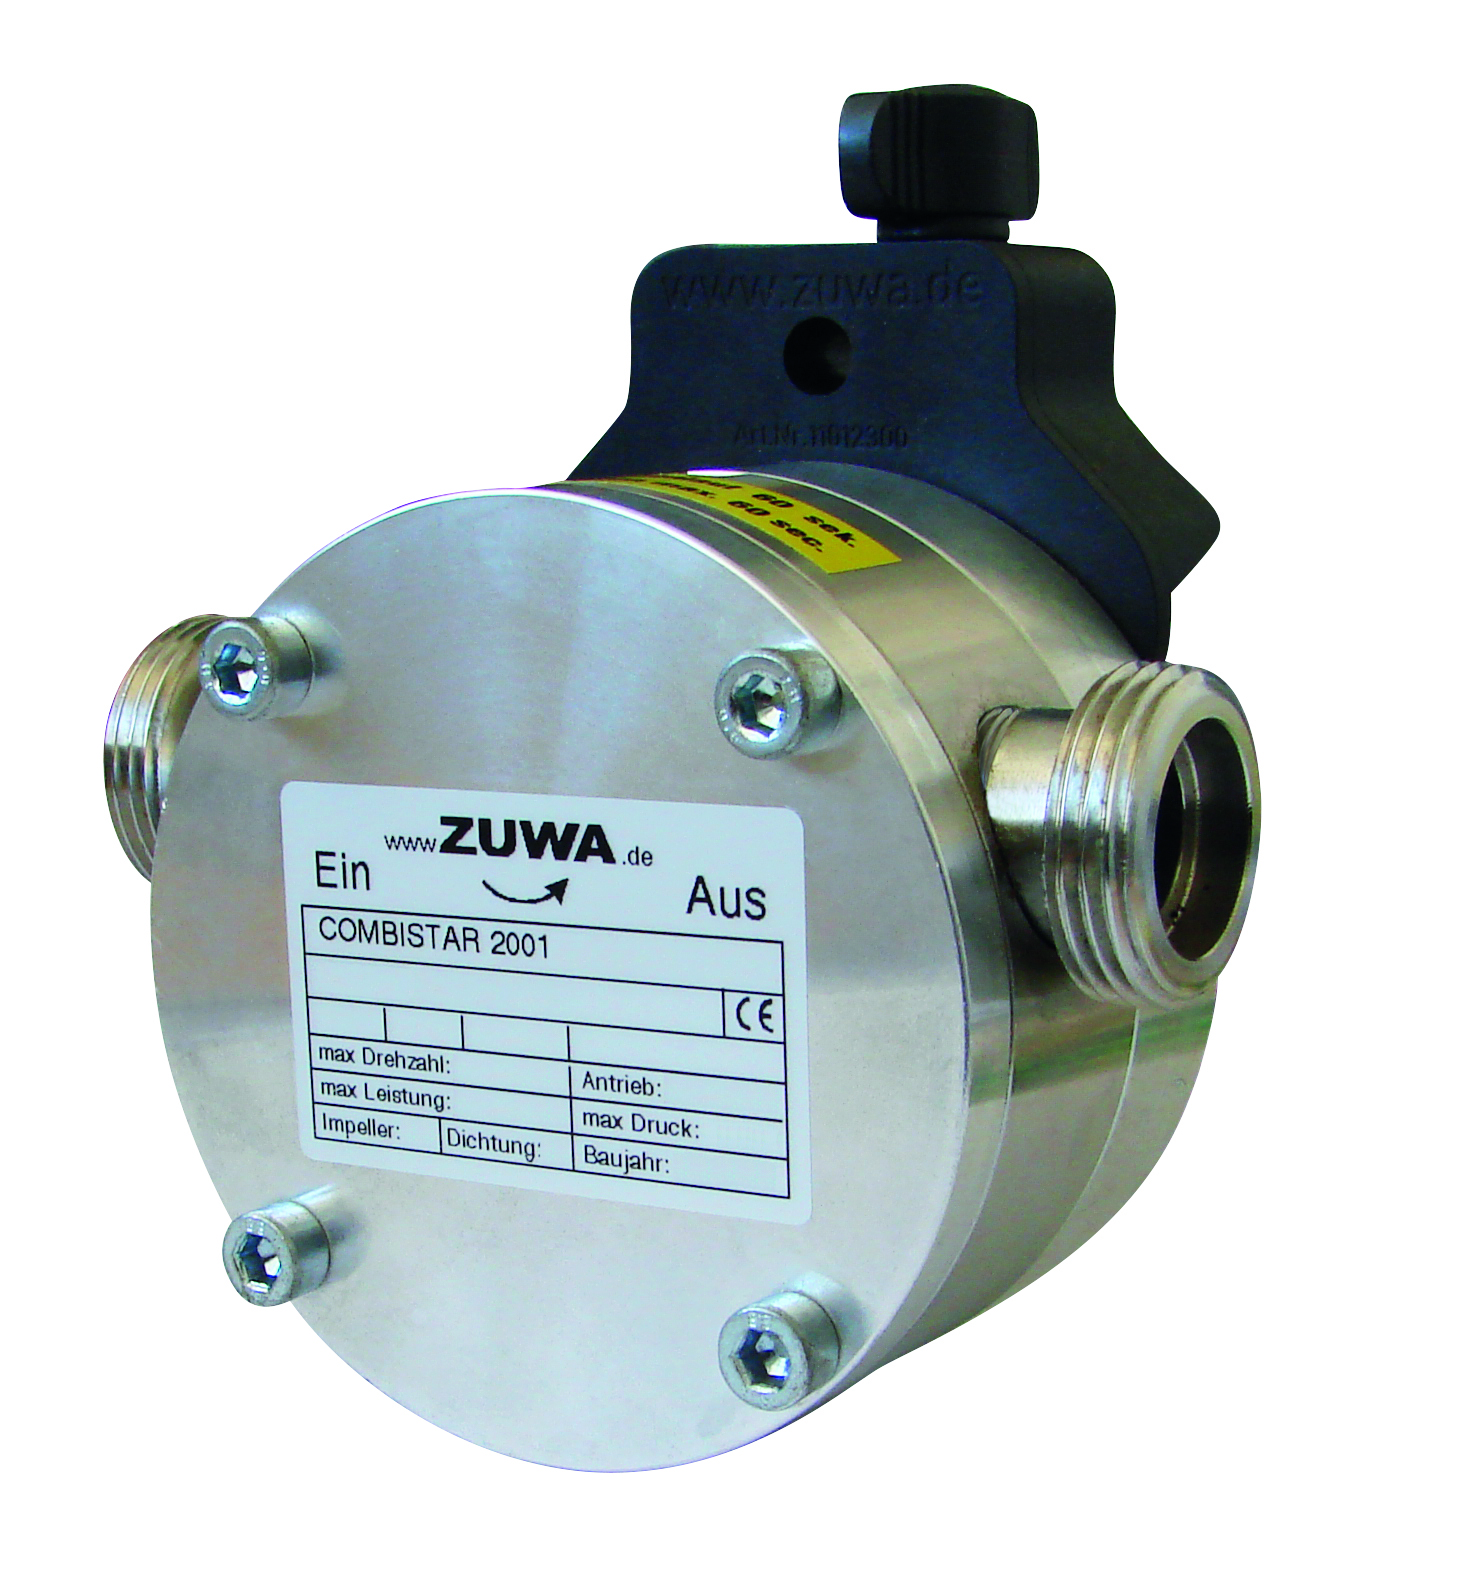 Zuwa Impellerpumpe COMBISTAR 2001-A, 30 l/min, Bohrmaschinenpumpe - 121111100AB